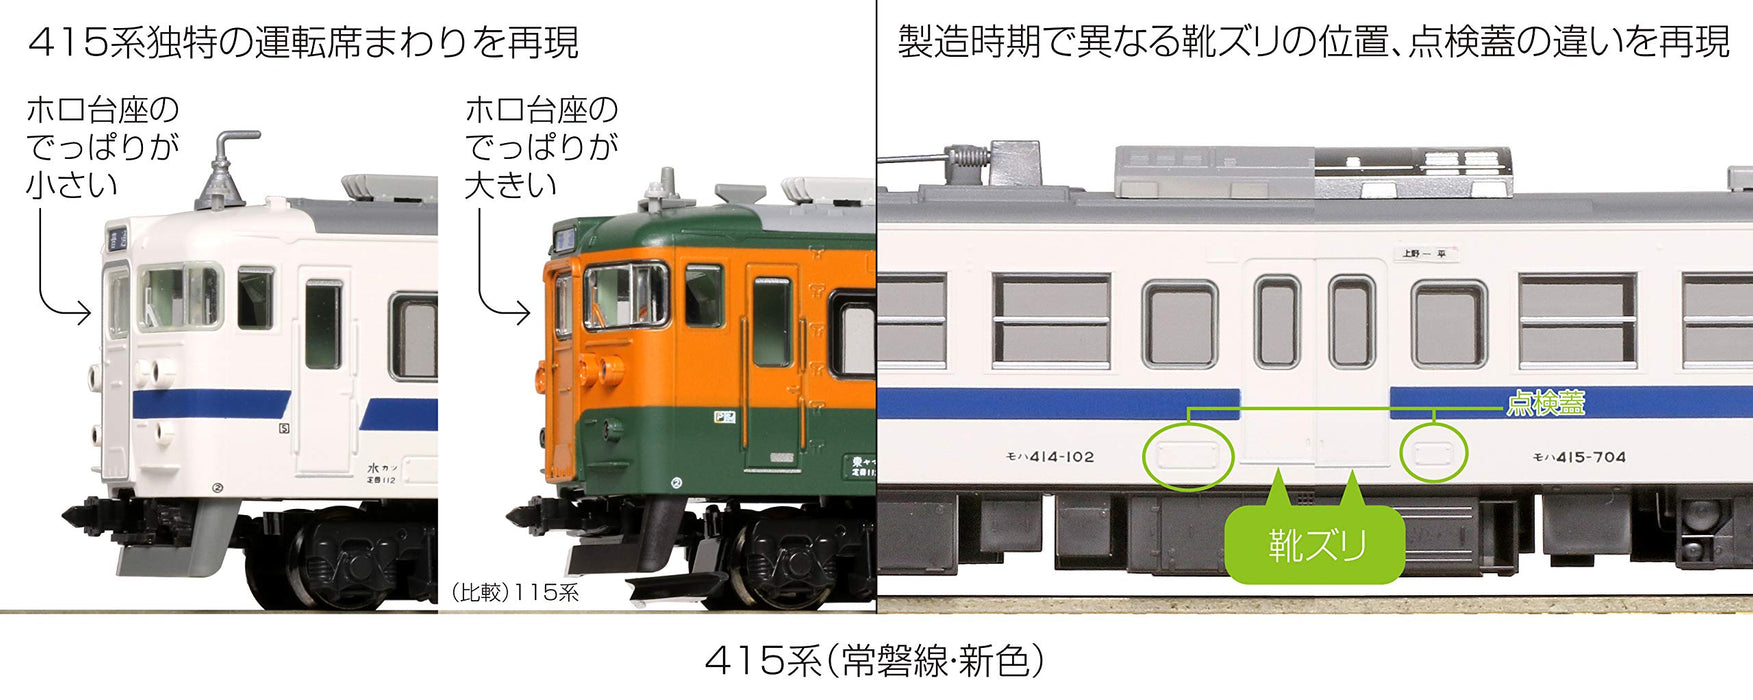 Kato N Spur 415 Serie Joban Line 4-Wagen-Set 10-1537 Eisenbahn-Modellzug, neue Farbe